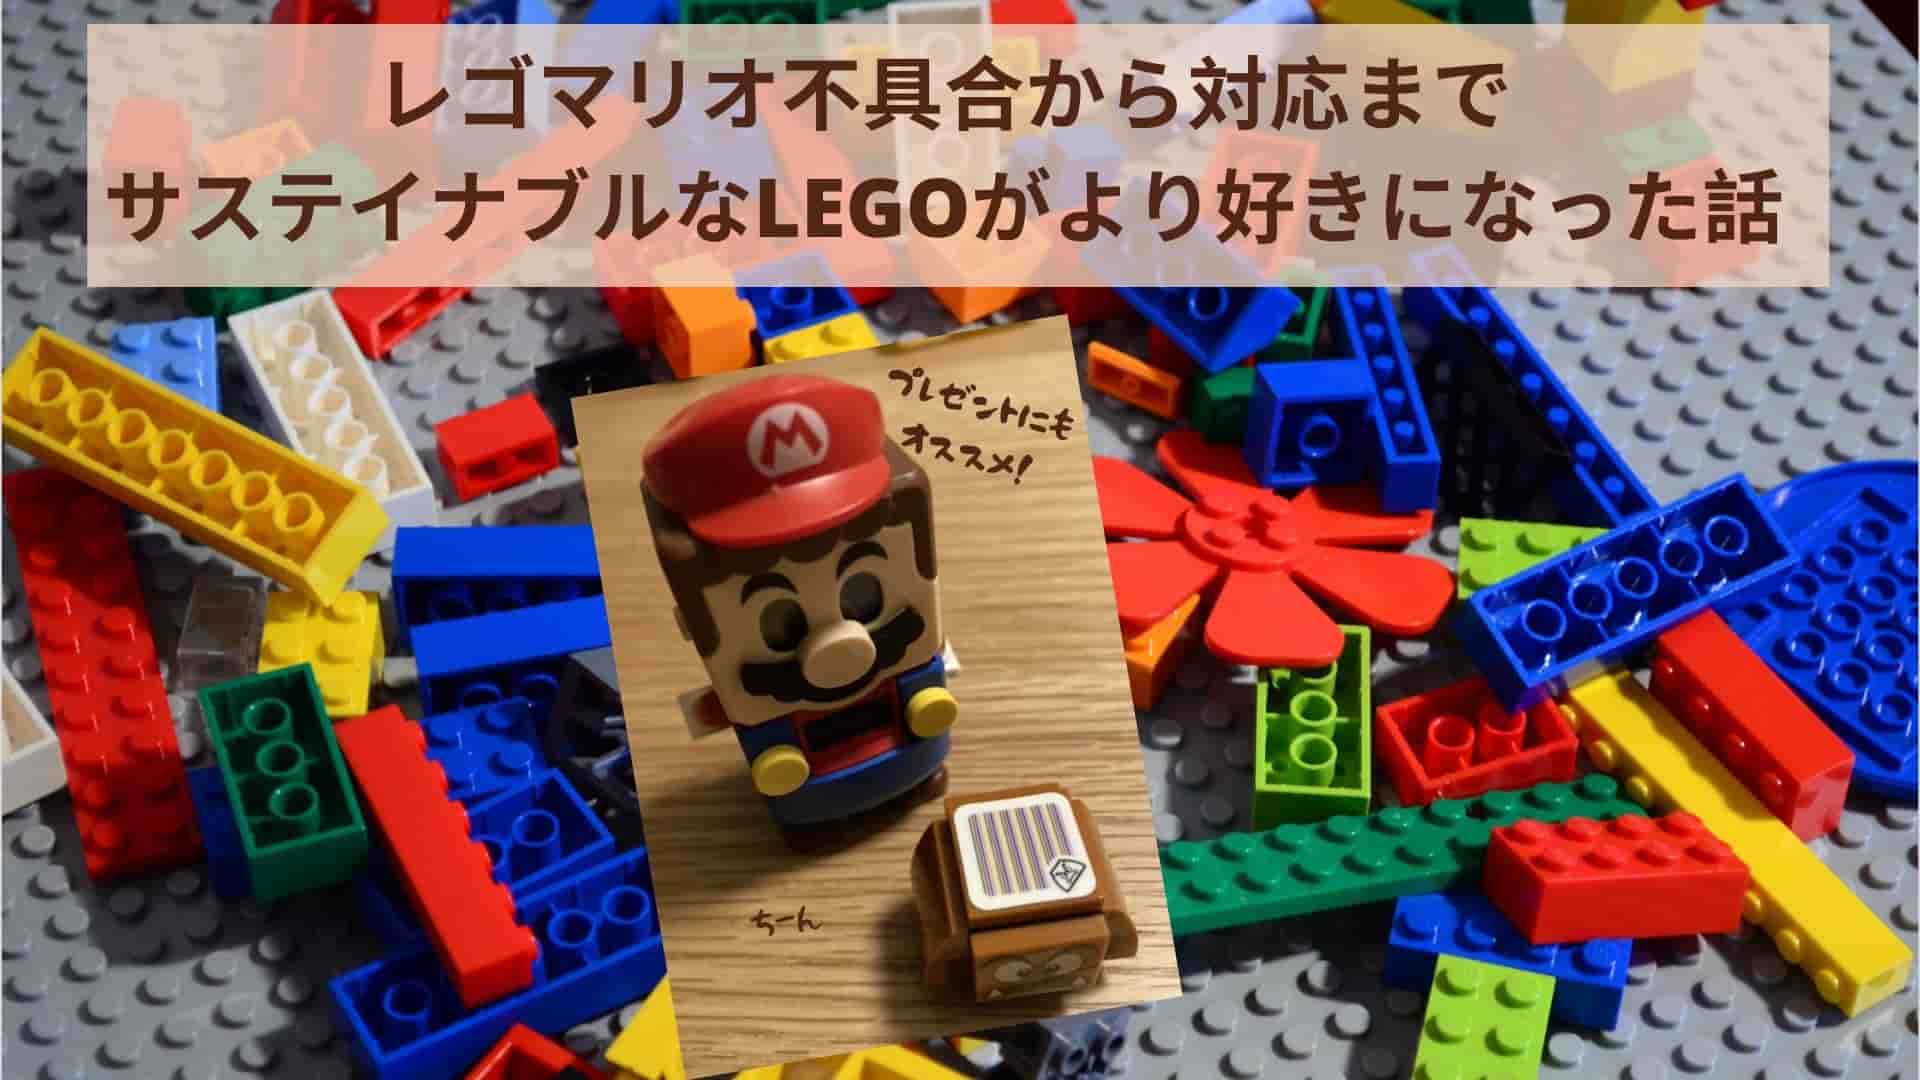 LEGO-mario-error